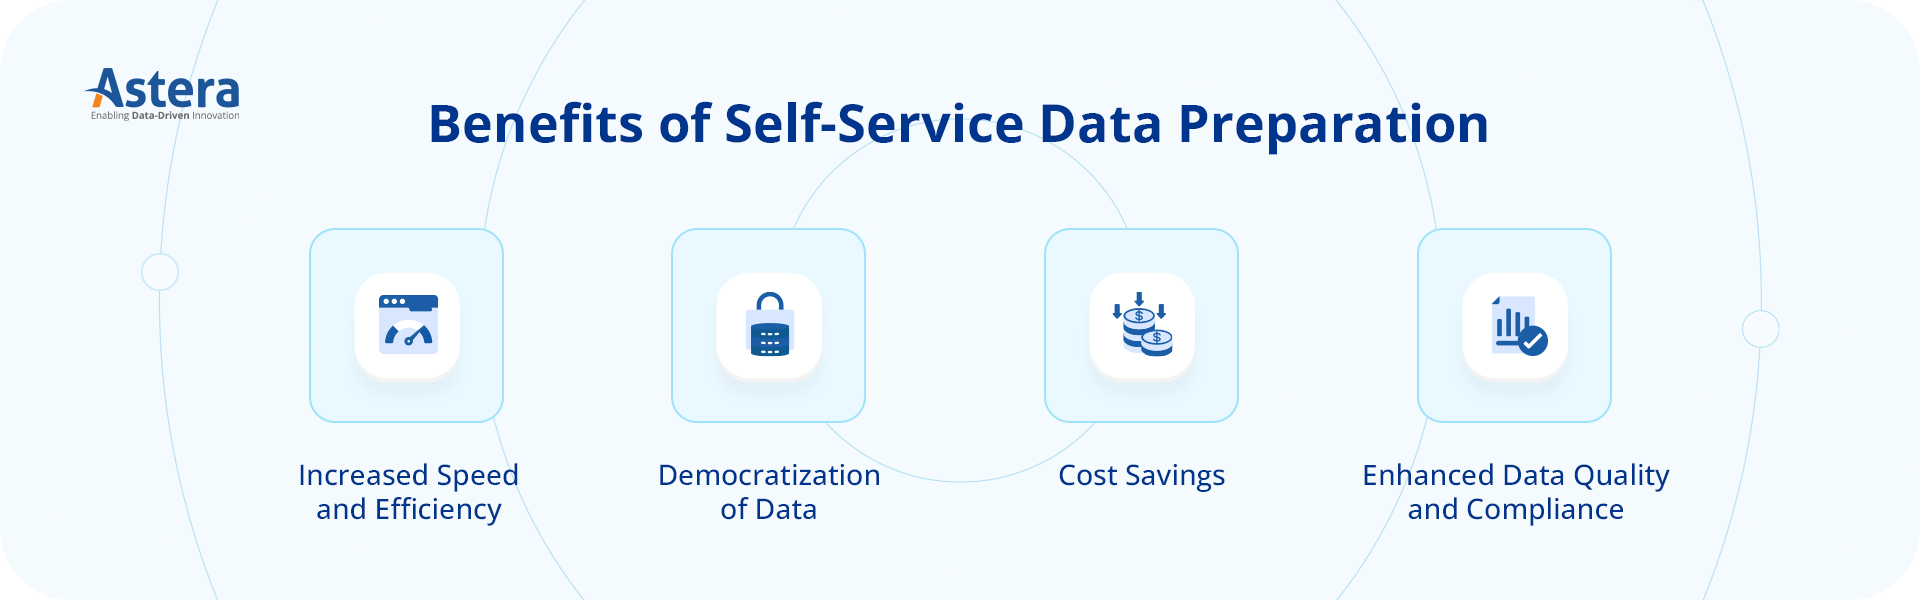 Beneficios de la preparación de datos de autoservicio